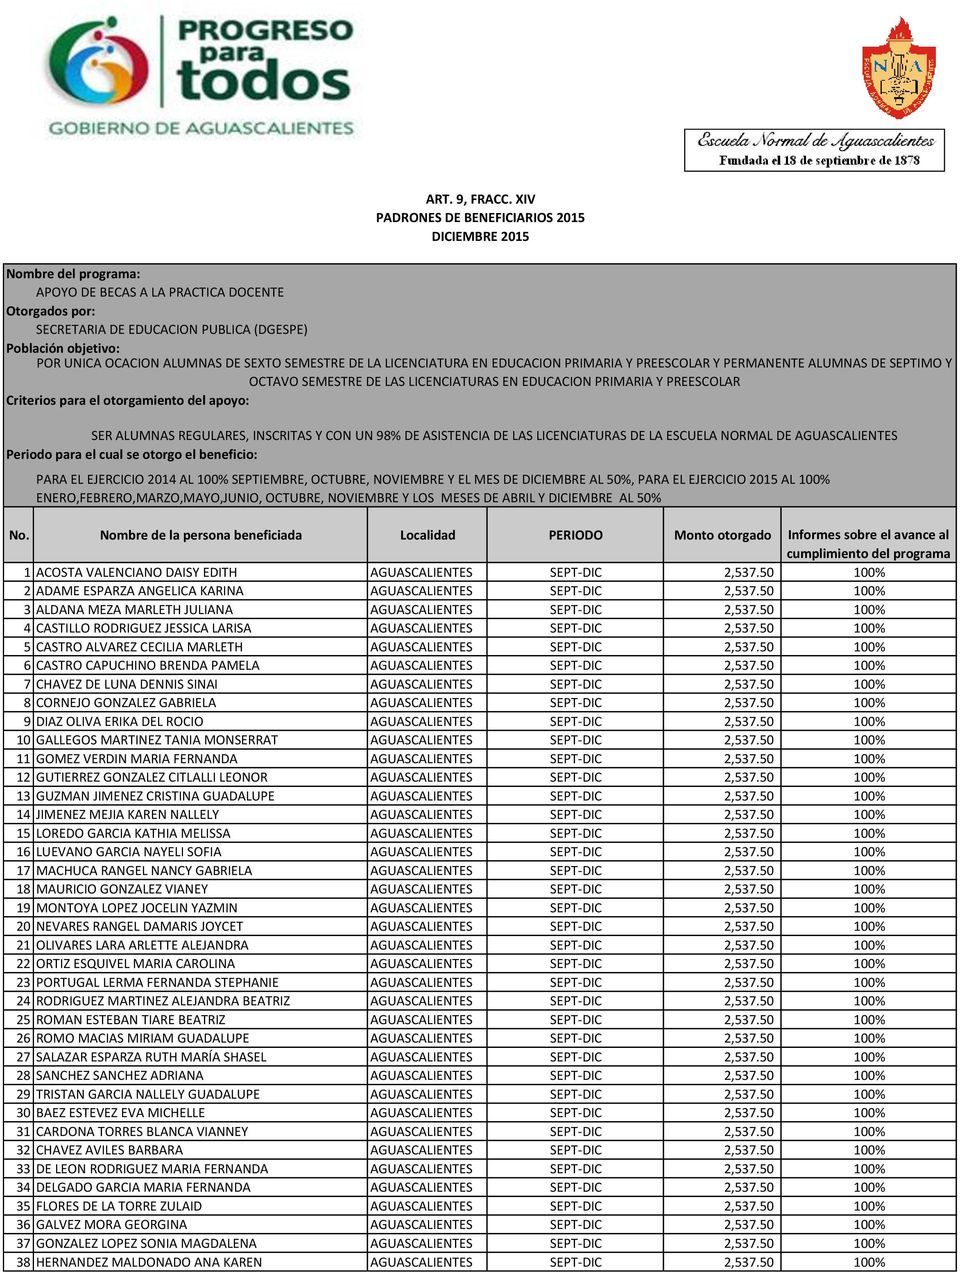 50 100% 6 CASTRO CAPUCHINO BRENDA PAMELA AGUASCALIENTES SEPT-DIC 2,537.50 100% 7 CHAVEZ DE LUNA DENNIS SINAI AGUASCALIENTES SEPT-DIC 2,537.